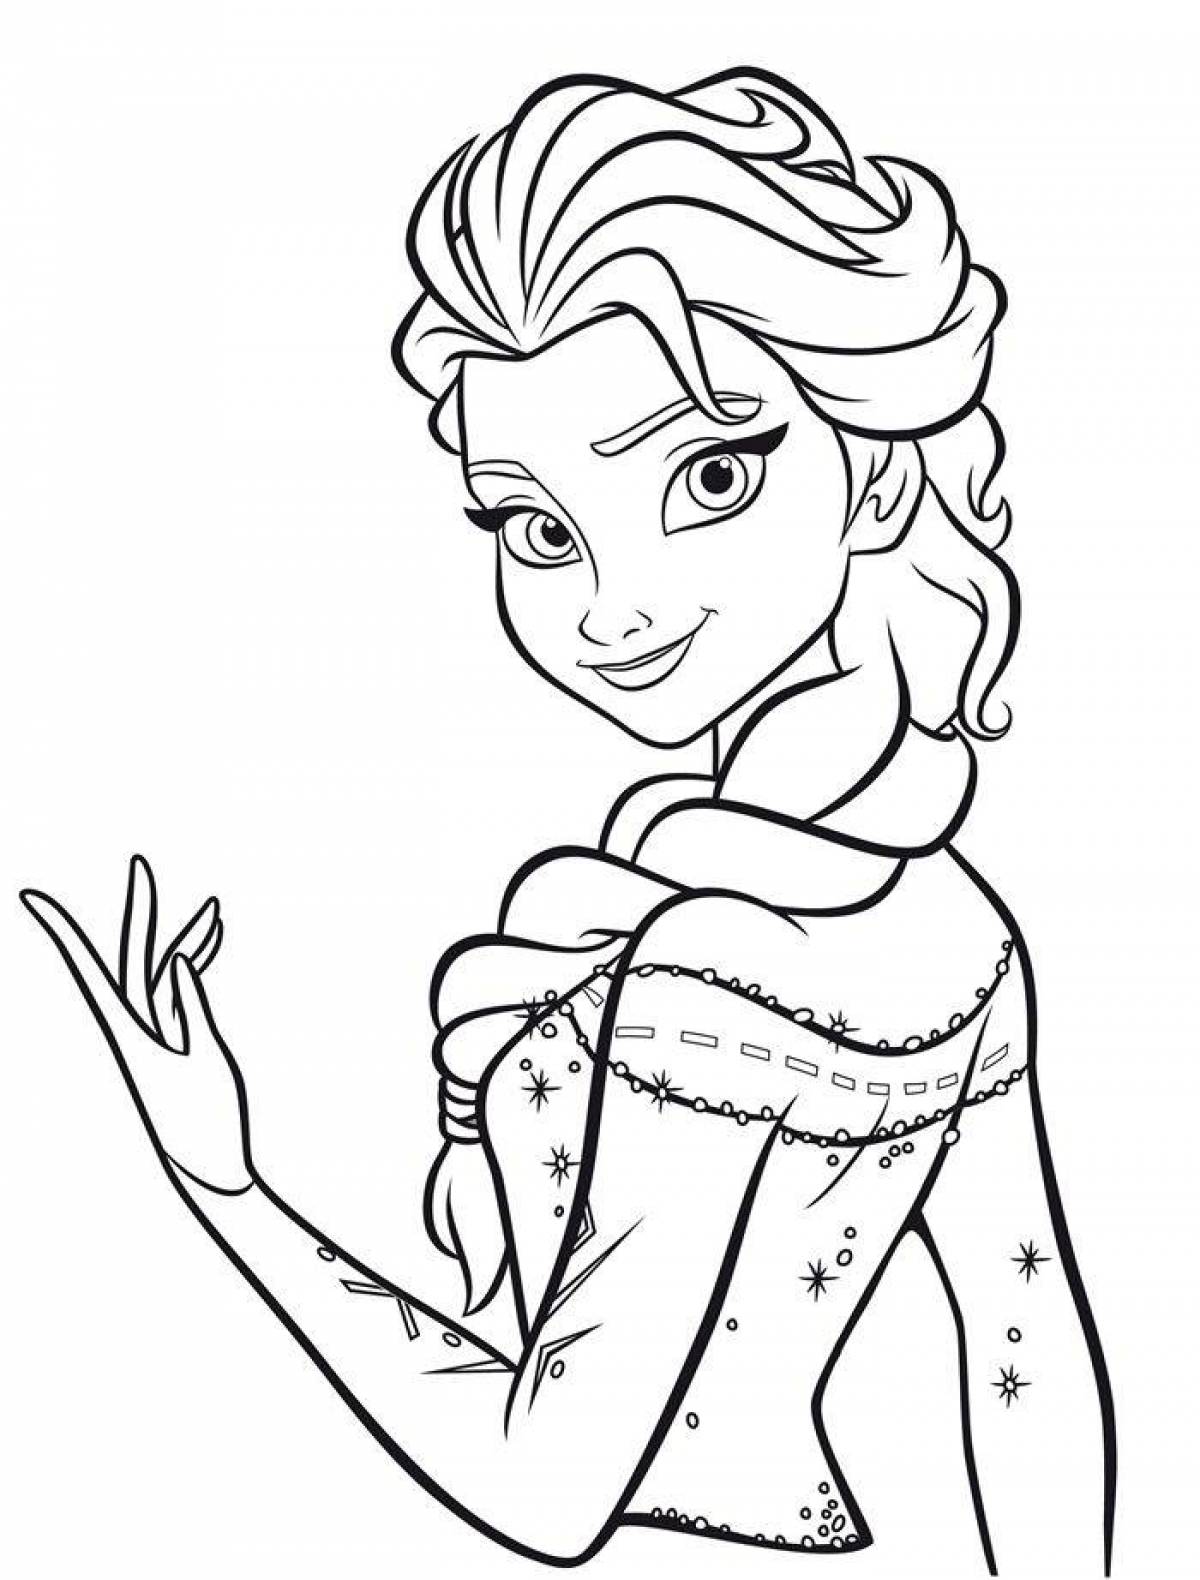 Elsa live coloring for kids